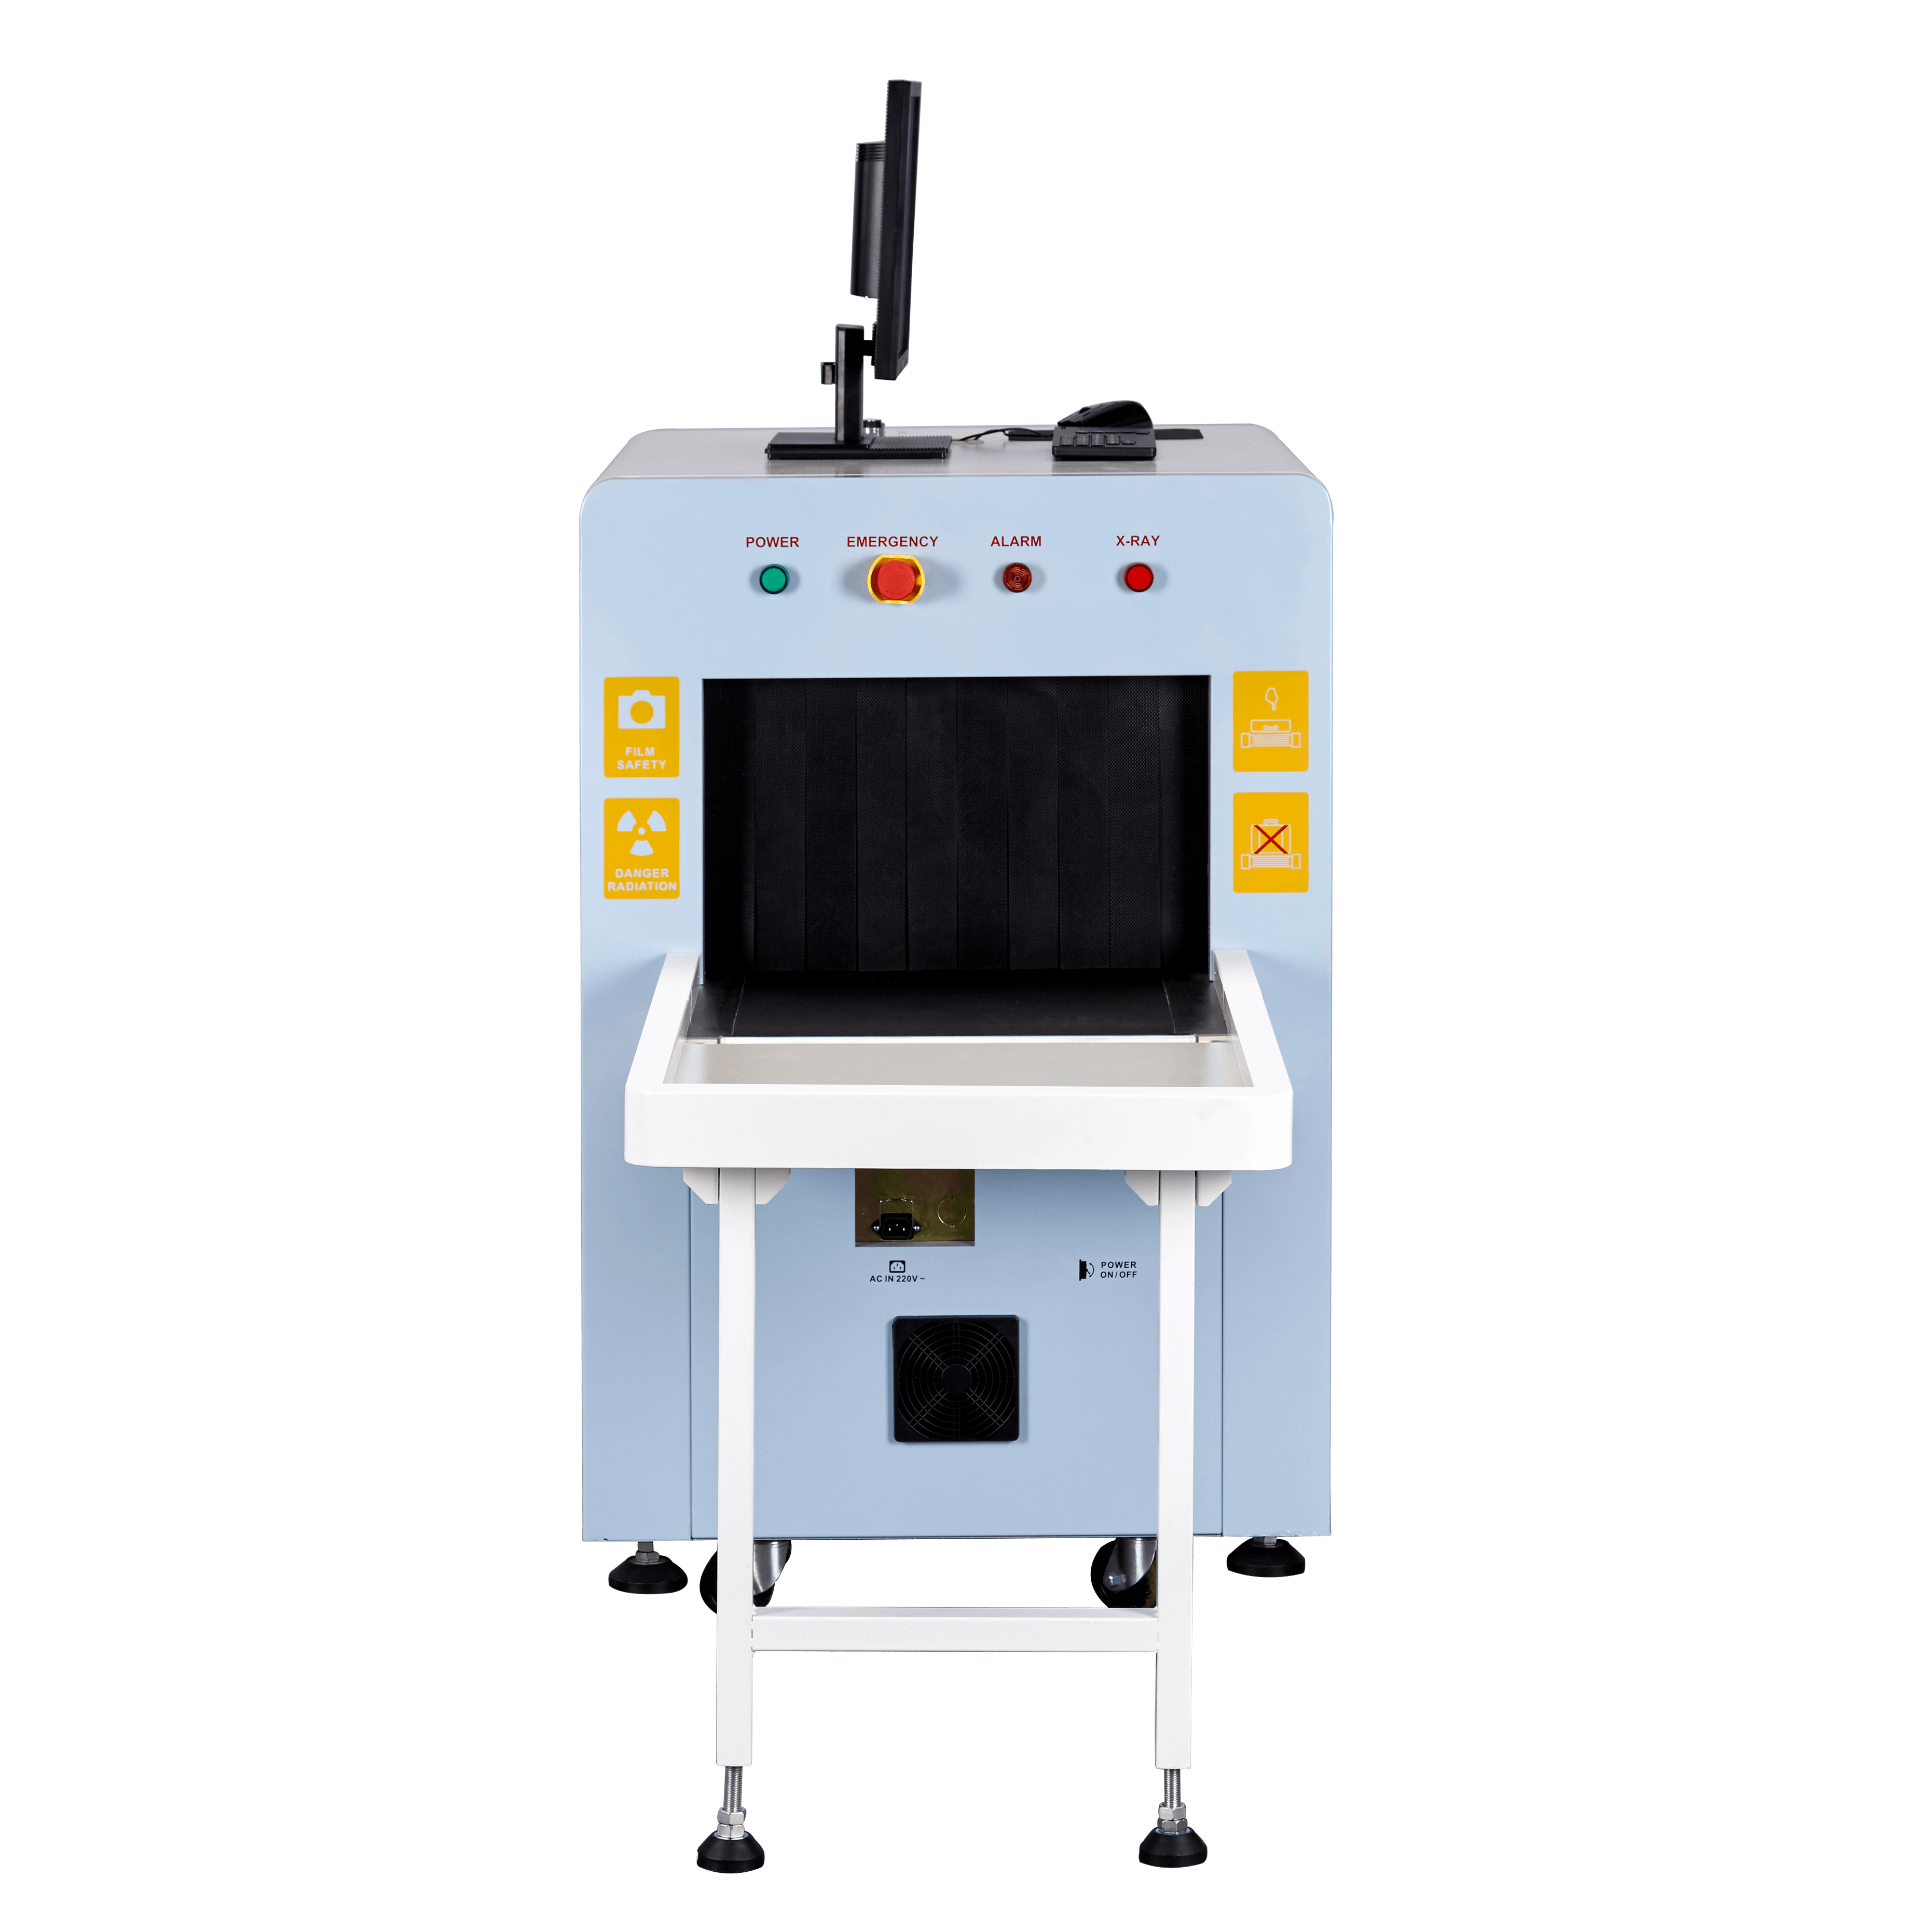 Machine de scanner de courrier du système X Ray de Safeway pour l'inspection de sécurité de gare ferroviaire